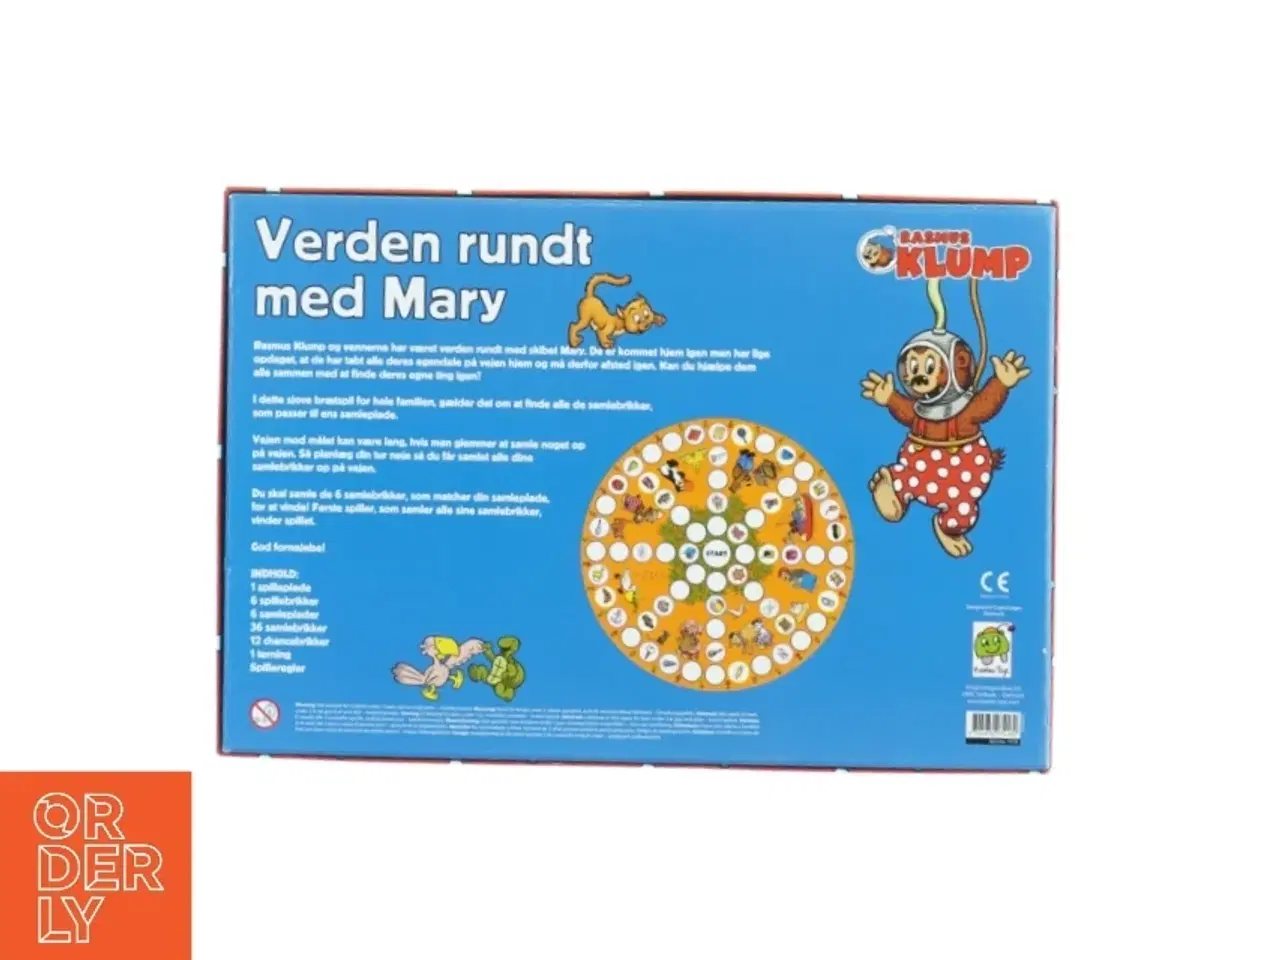 Billede 3 - Rasmus Klump: Verden rundt med Mary brætspil fra Barbo Toys (str. 35 x 24 cm)